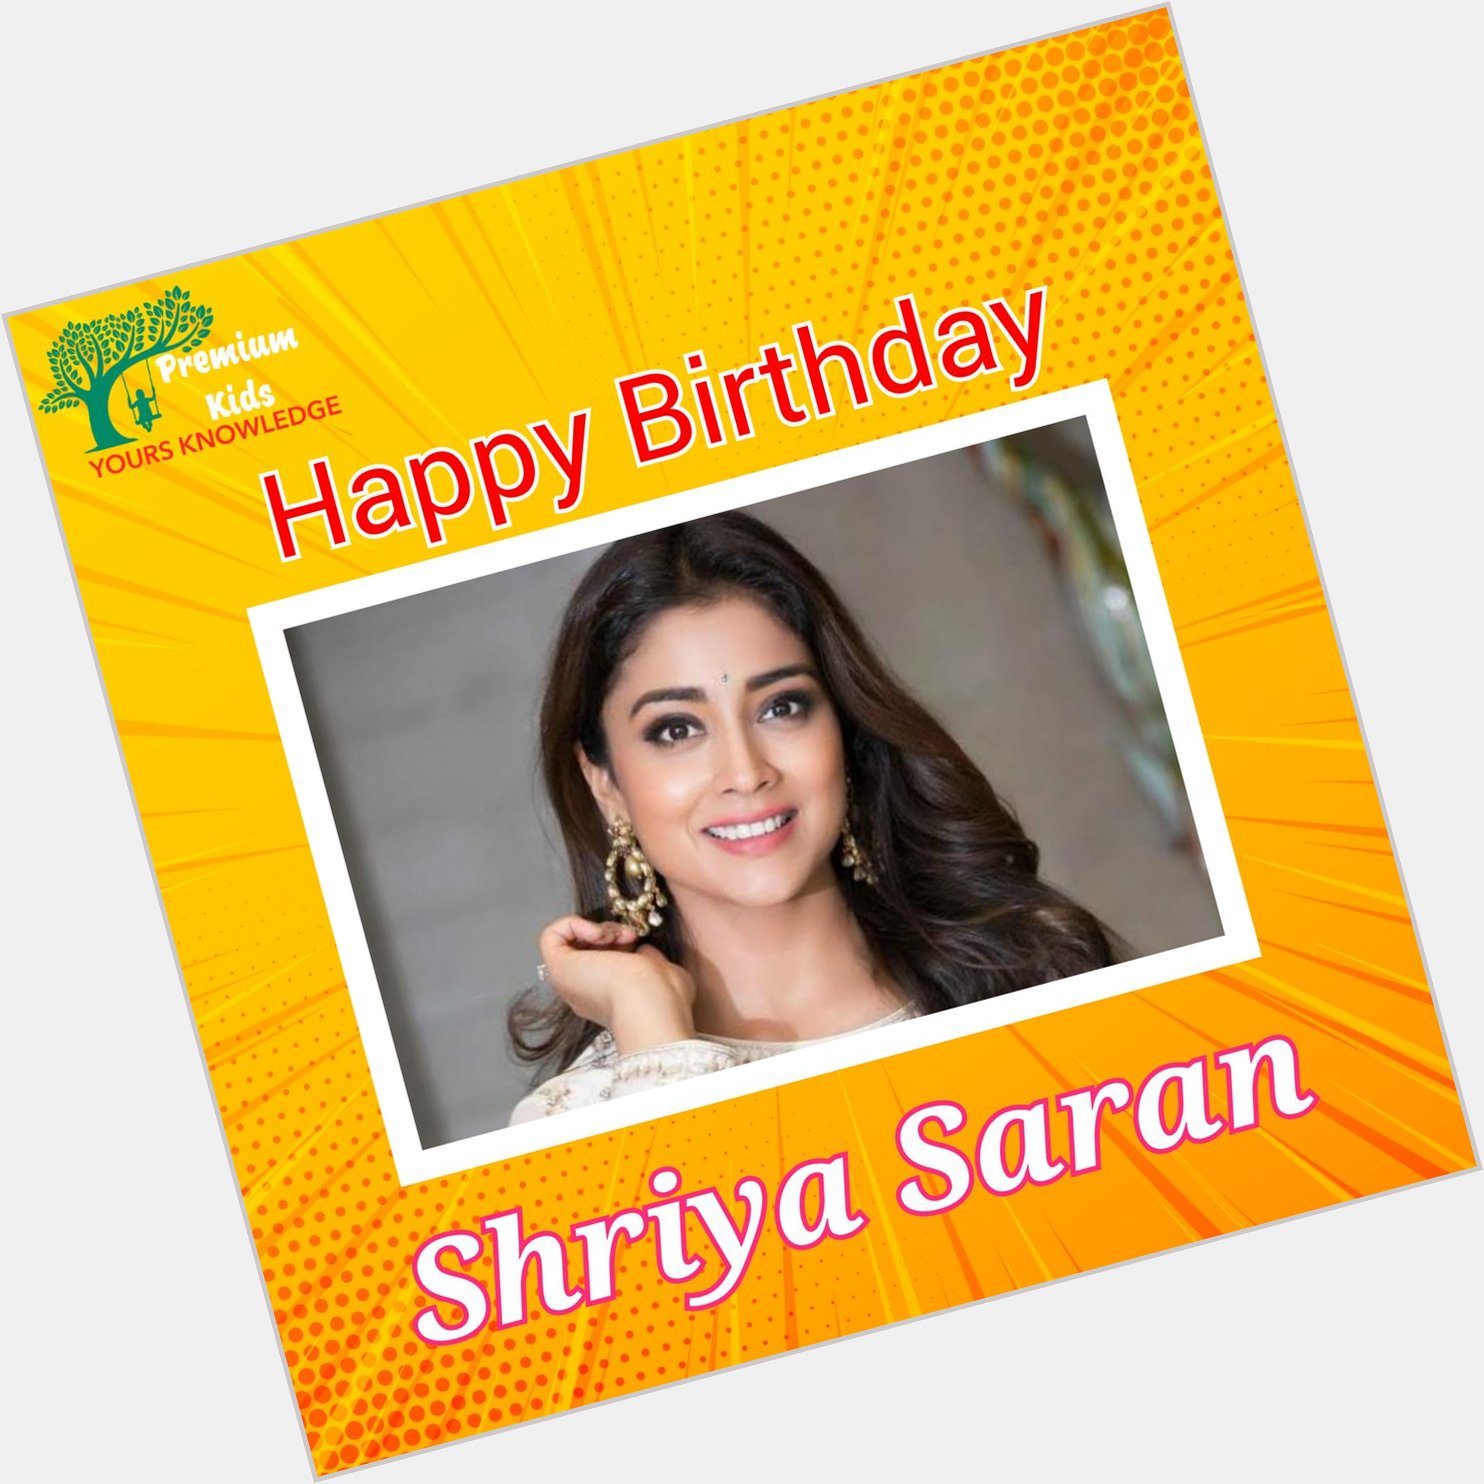 Happy Birthday to you Shriya Saran    